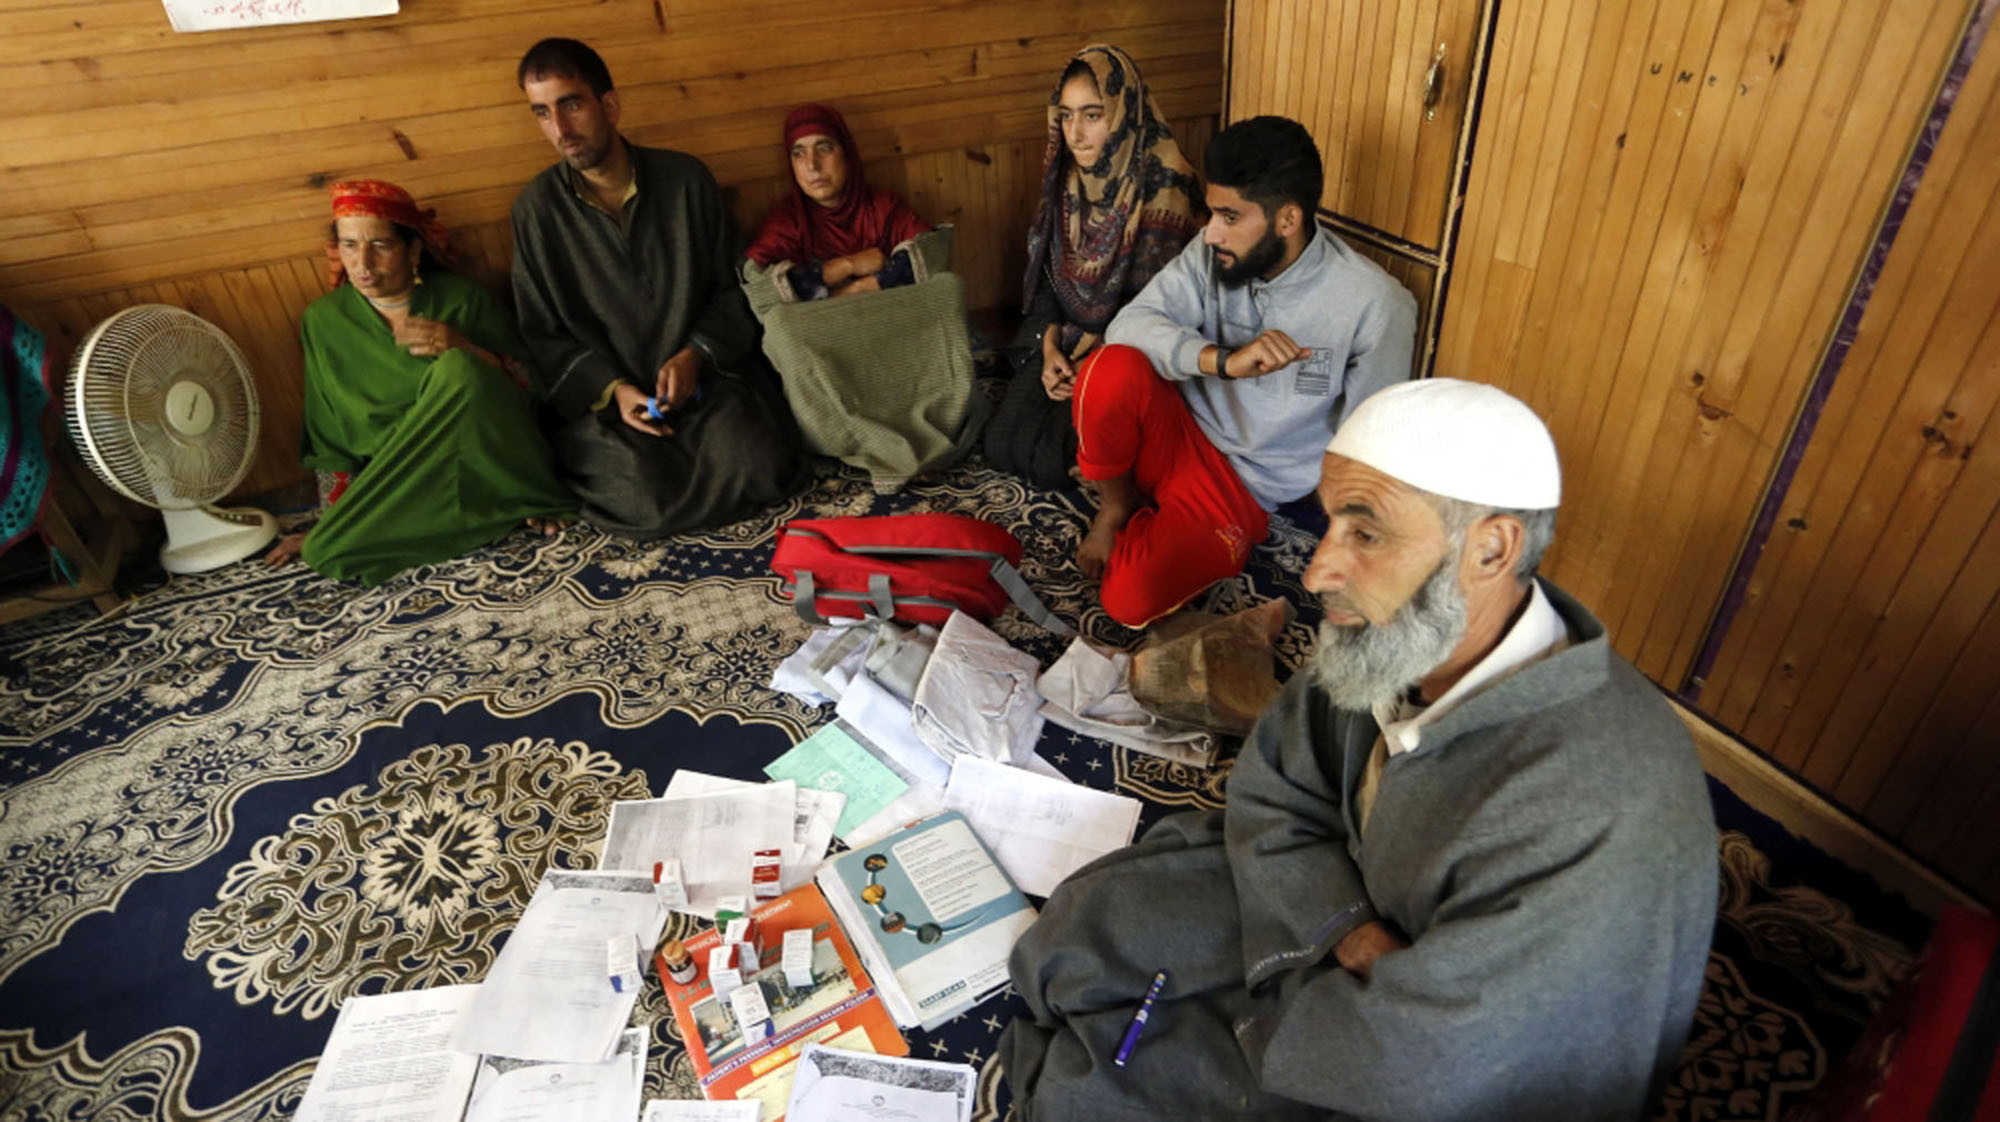  कश्मीर में कैंसर पीड़ित व्यक्ति दो माह से जेल में, पीड़ित परिवार उसकी ज़िन्दगी को लेकर सदमें में।